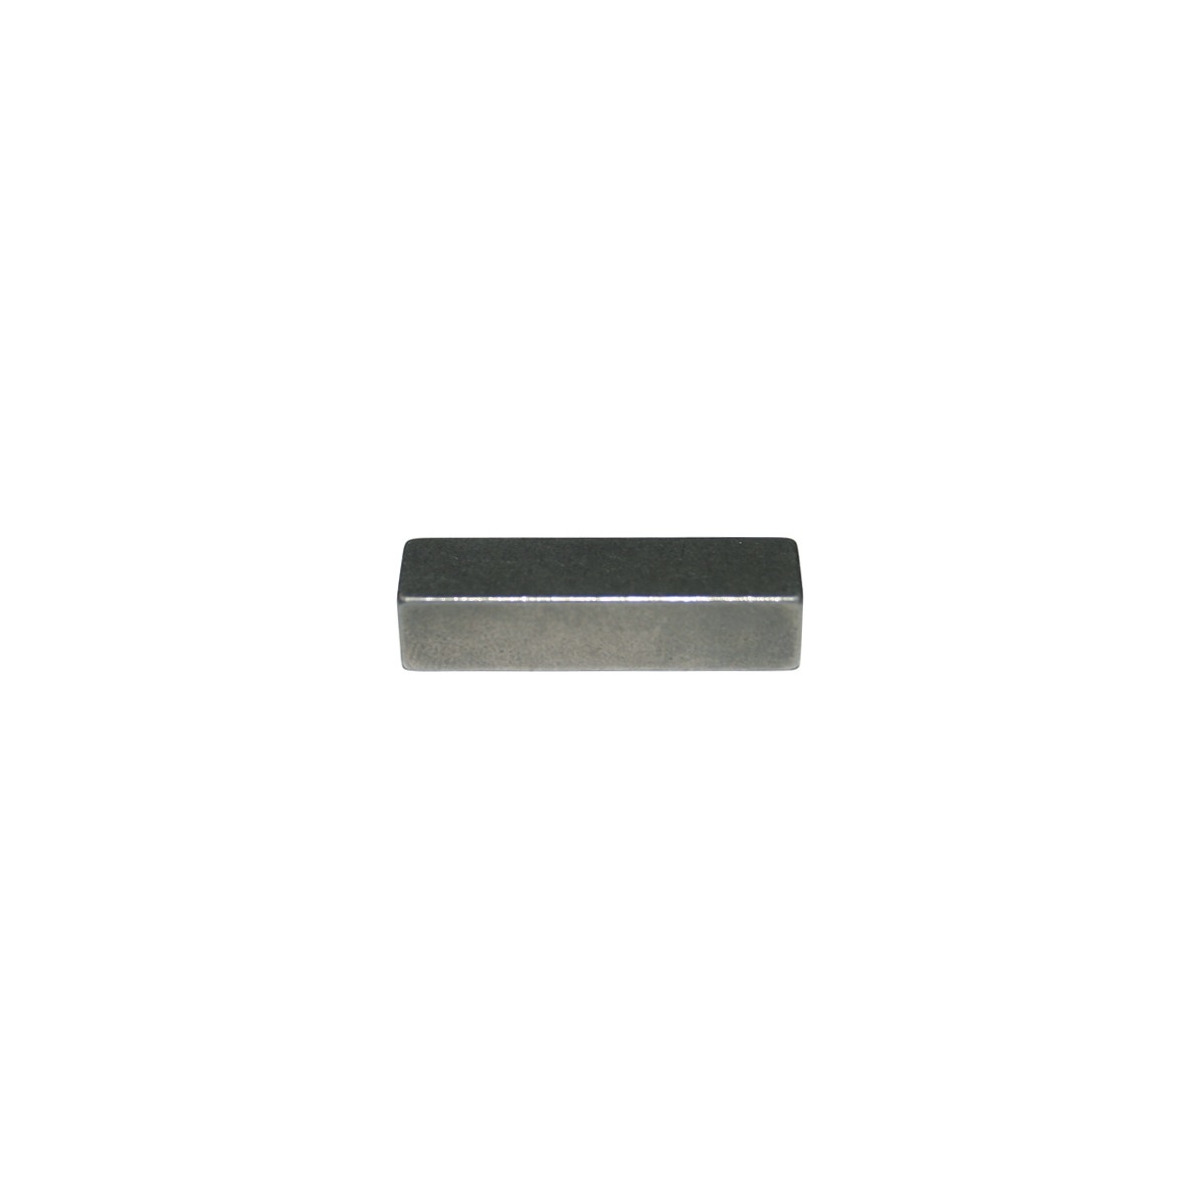 Passfeder halbrund Stahl 2,5 x 3,7 Länge 10 - Schrauben-Express